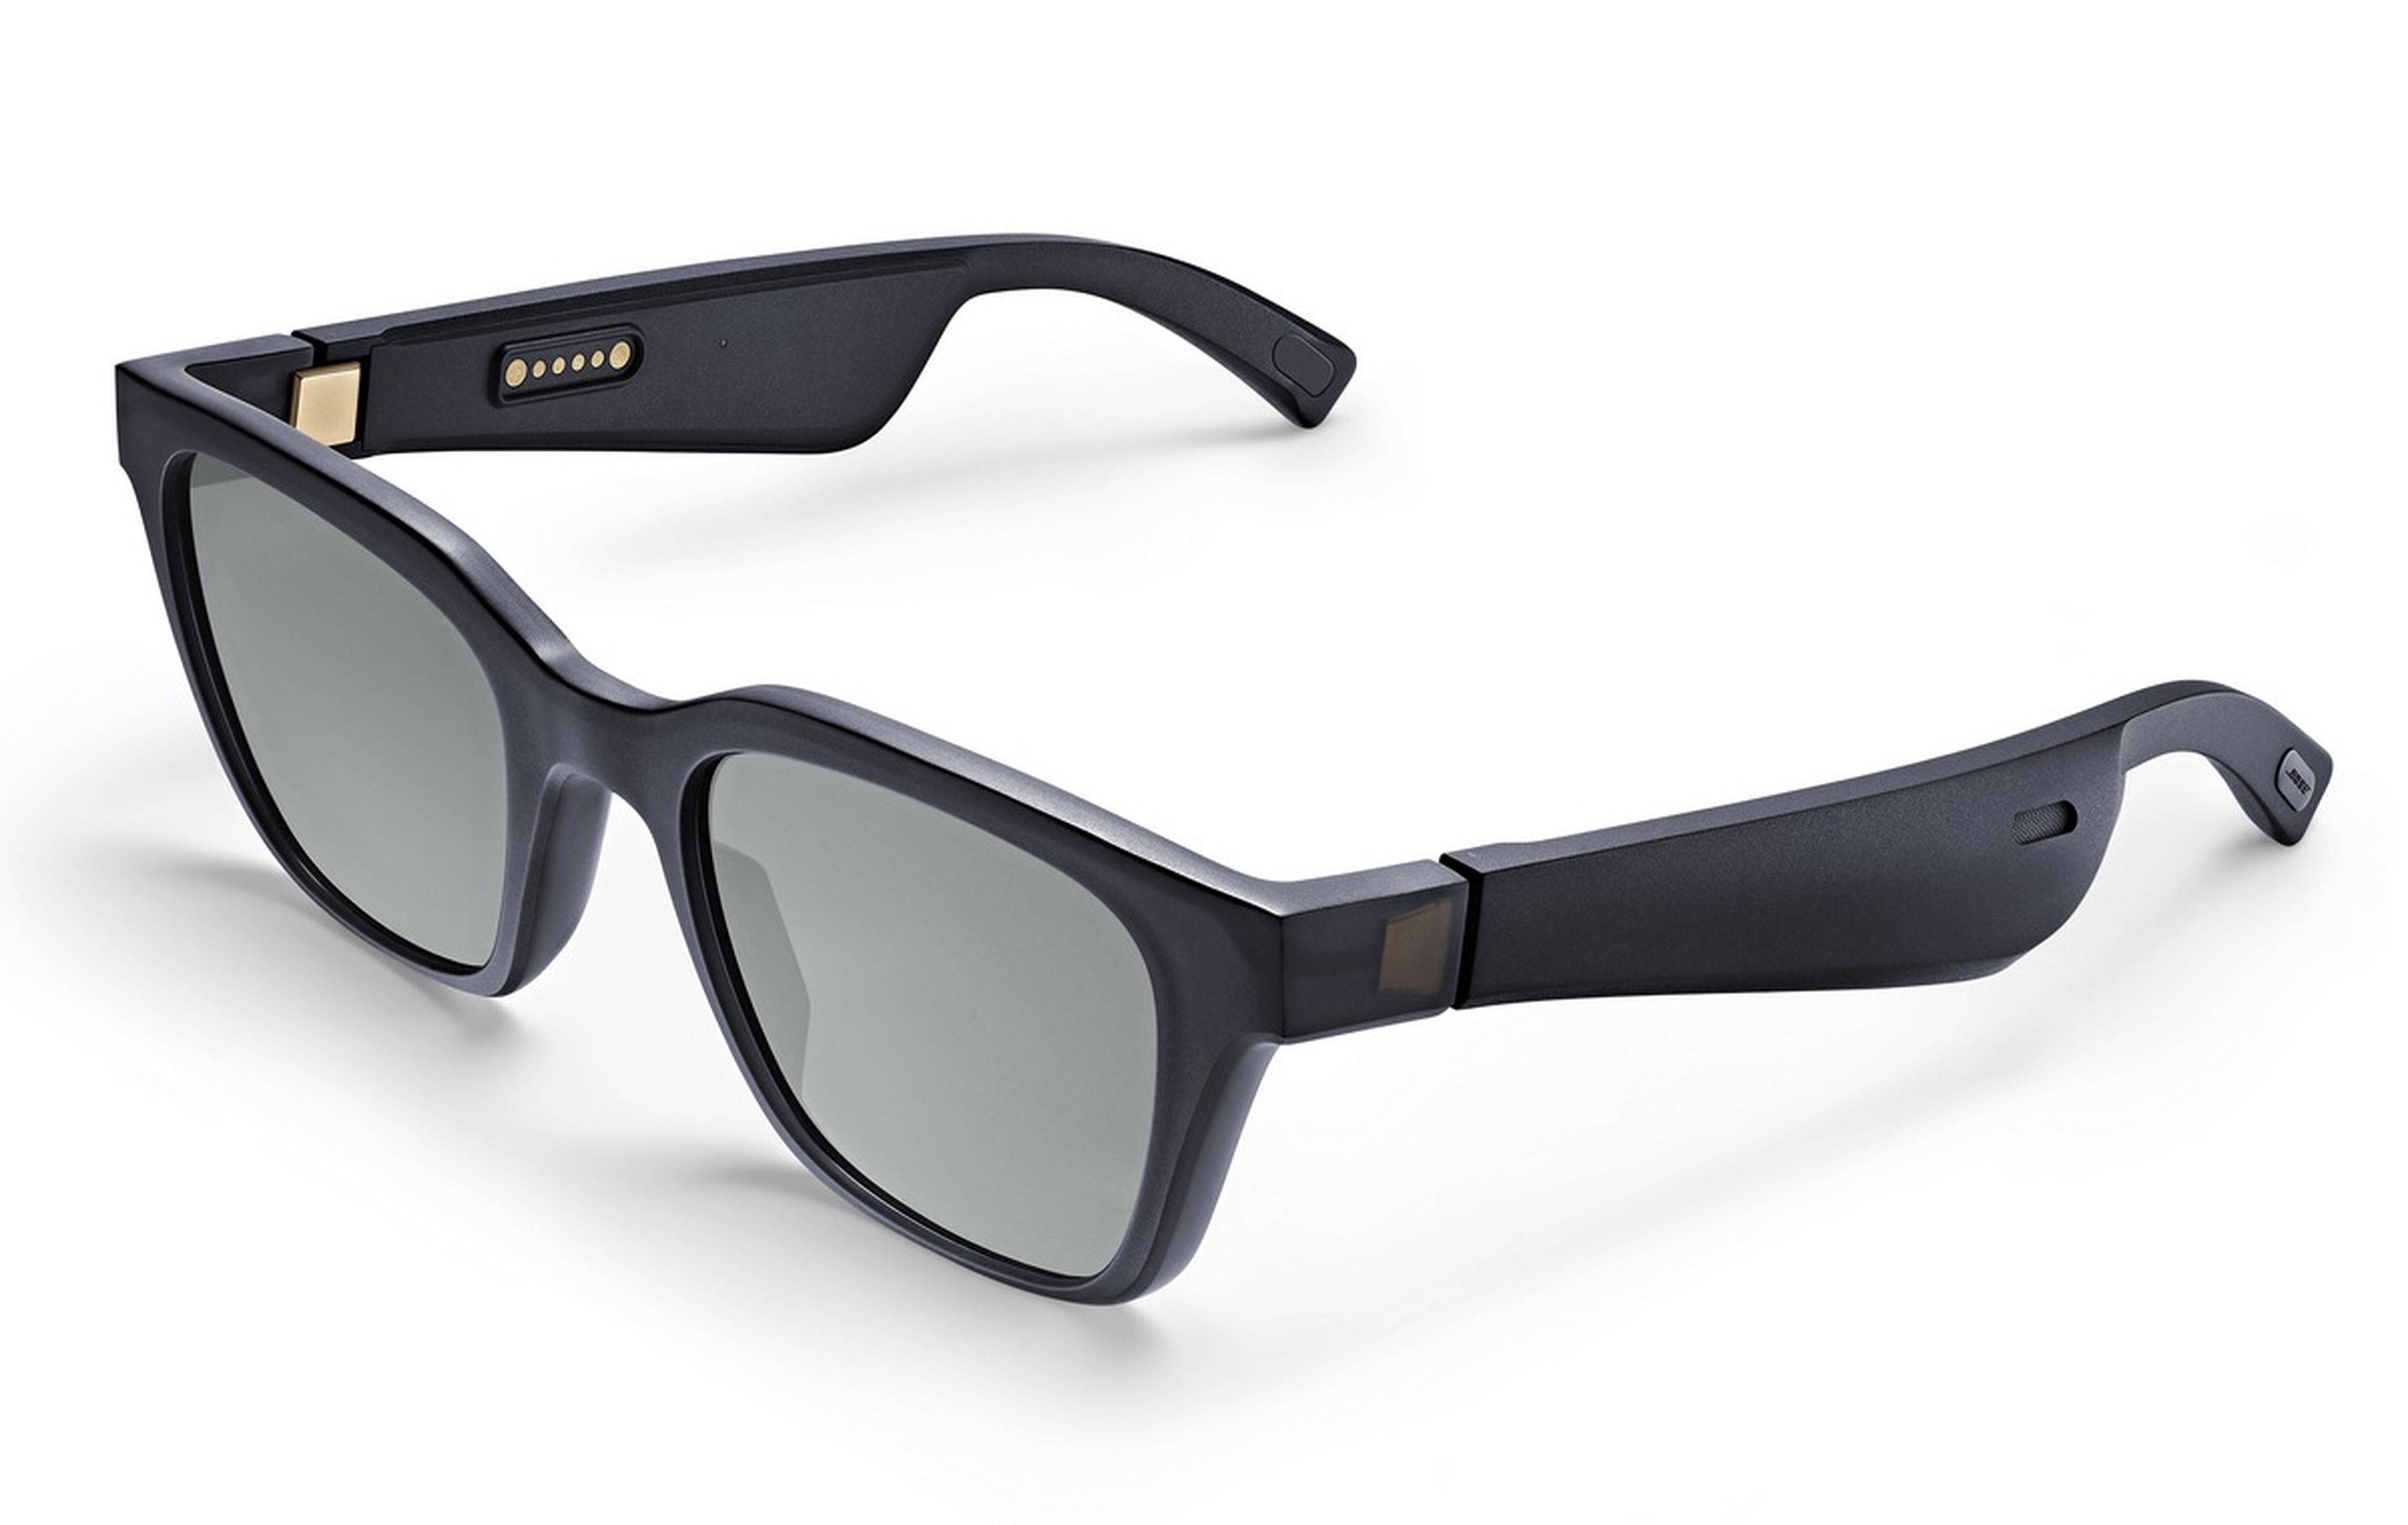 Bose presenta Frames, unas gafas de sol con auriculares y asistente virtual